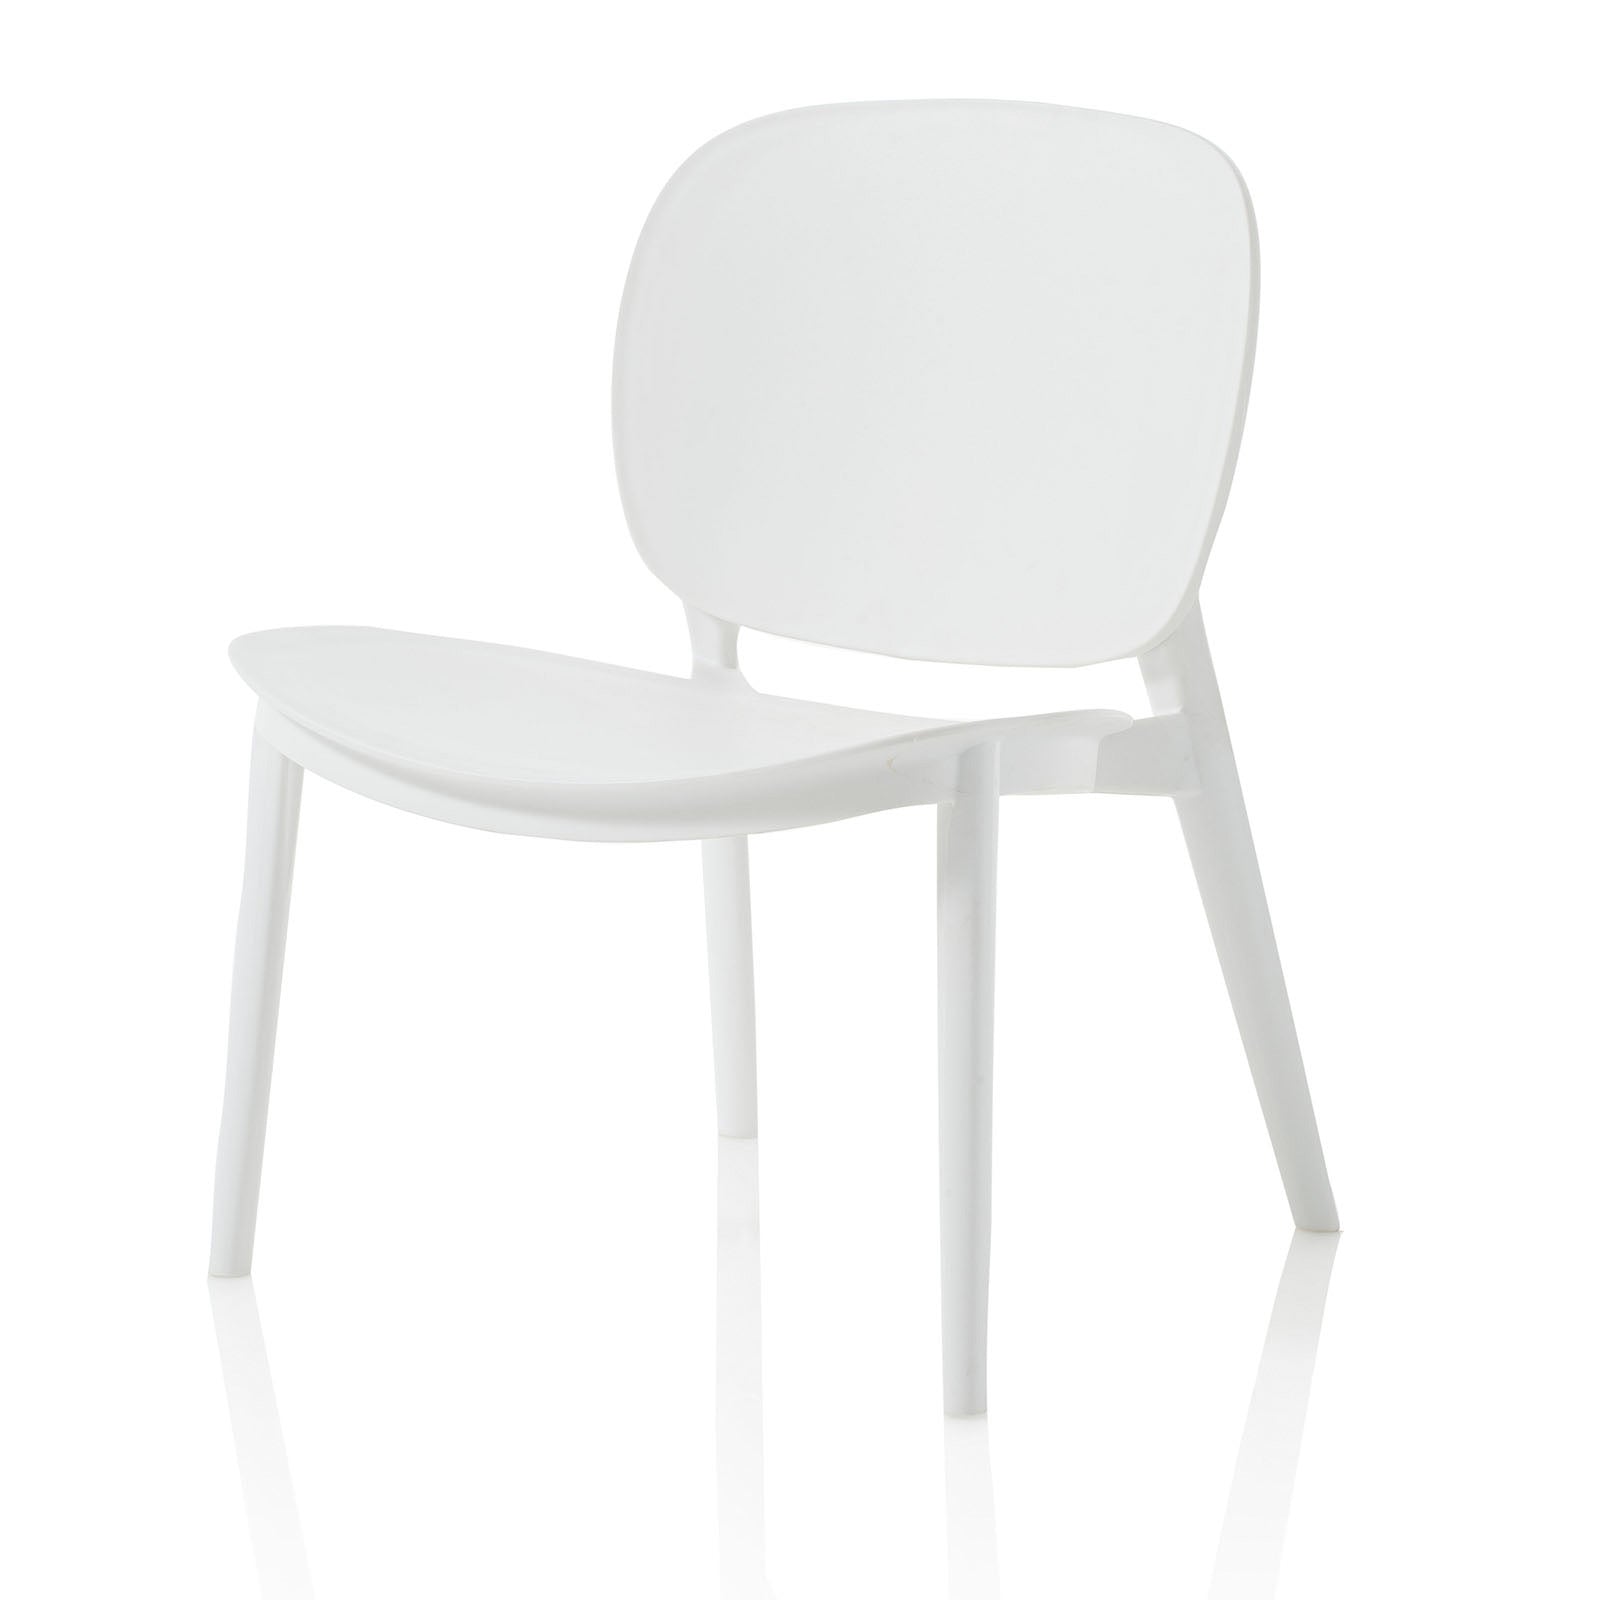 Conjunto de 2 sillas SEAT para interior y exterior en polipropileno